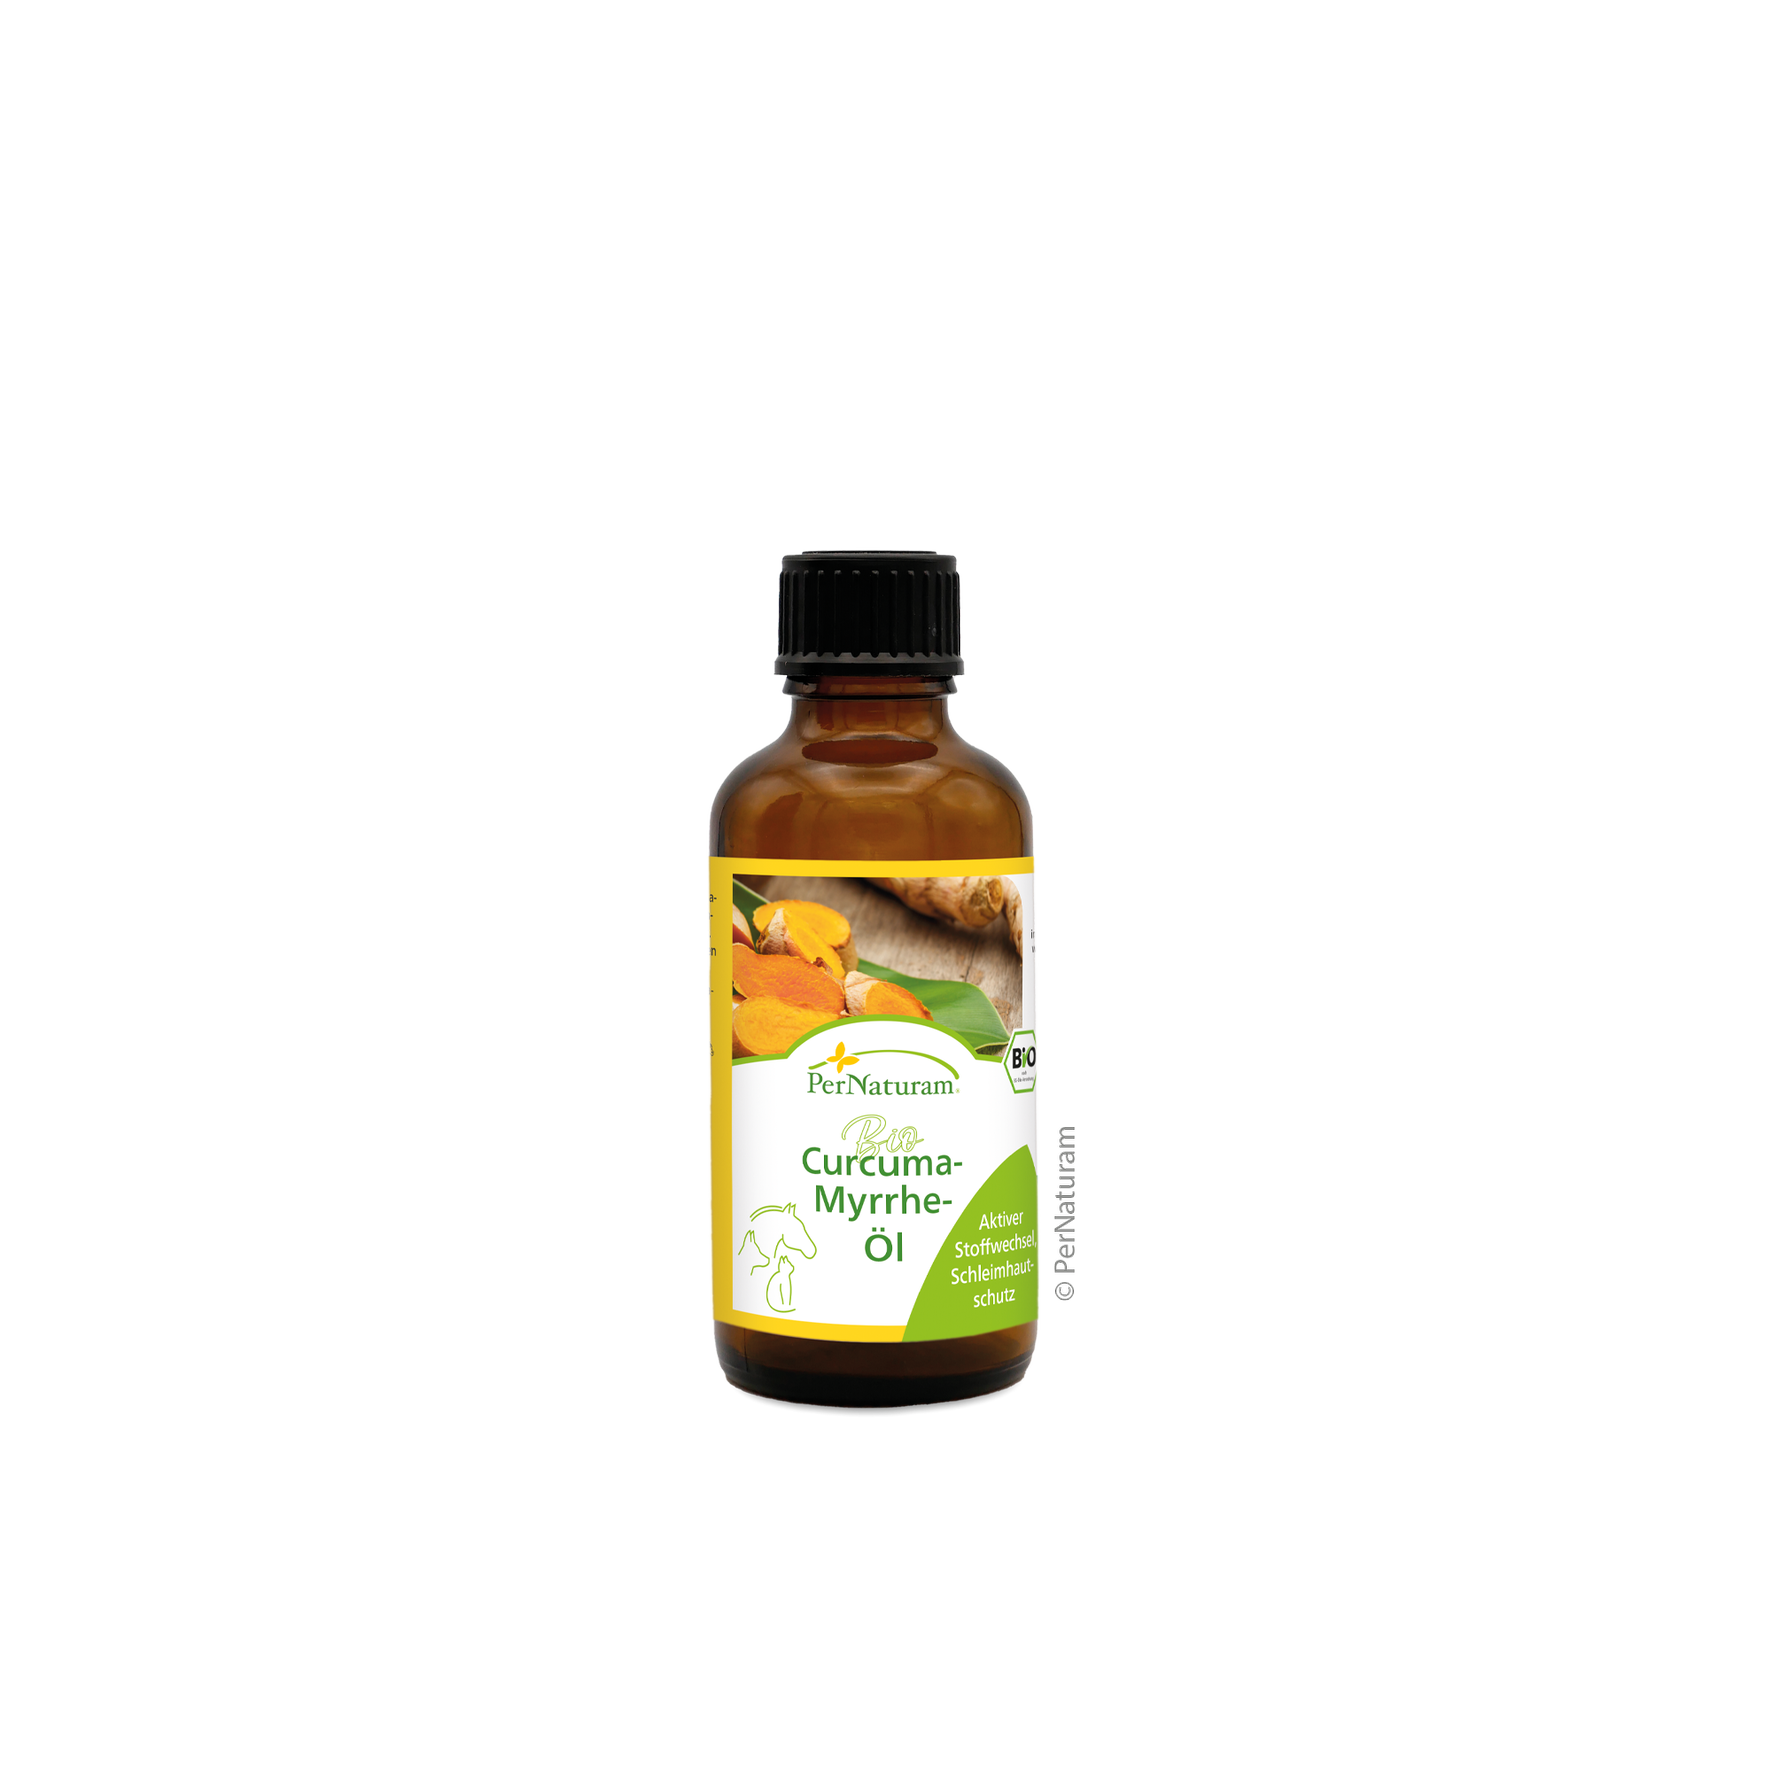 PerNaturam Curcuma-Myrrhe-Öl 0,05 l